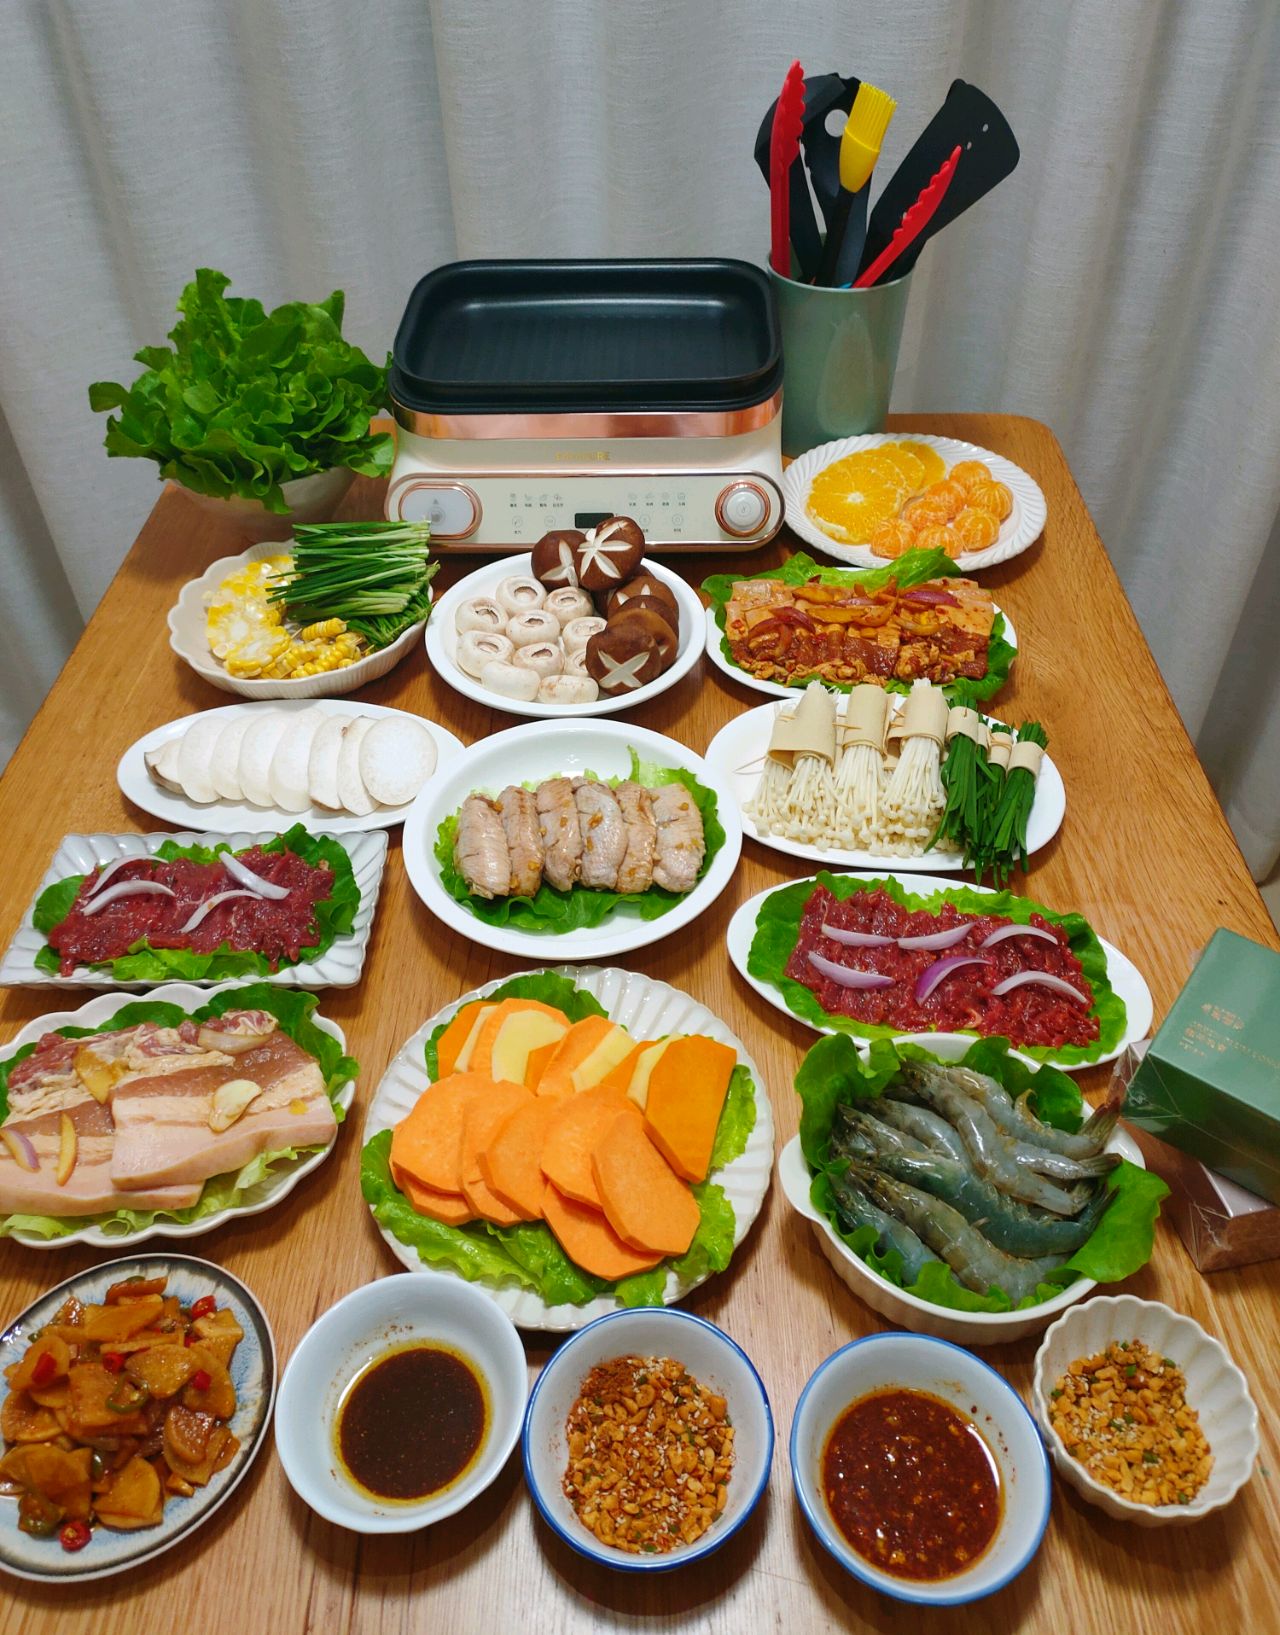 在家吃韩国烤肉 - 在家吃韩国烤肉做法、功效、食材 - 网上厨房